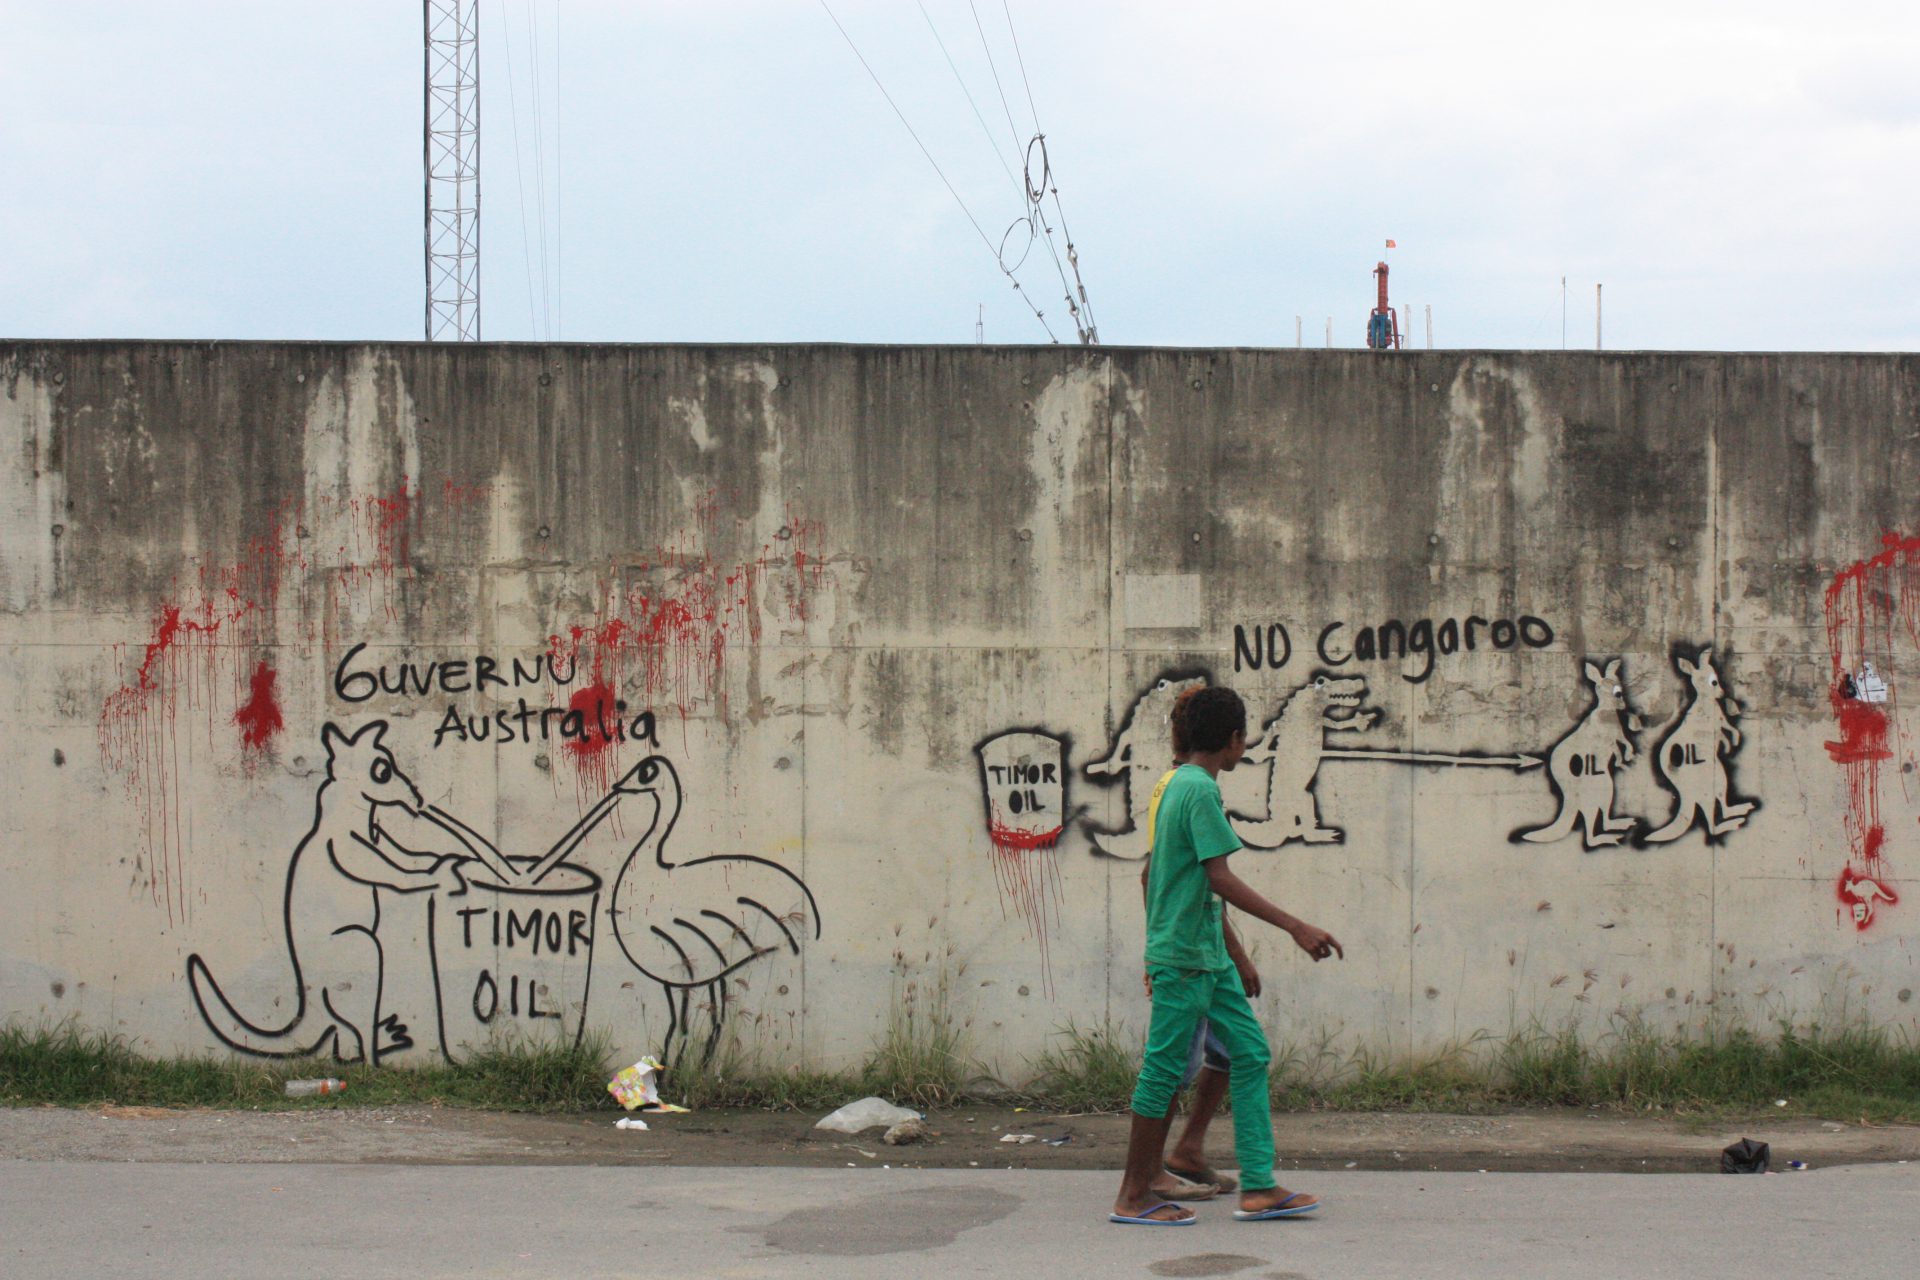 Timor_Oil_Graffiti (1)